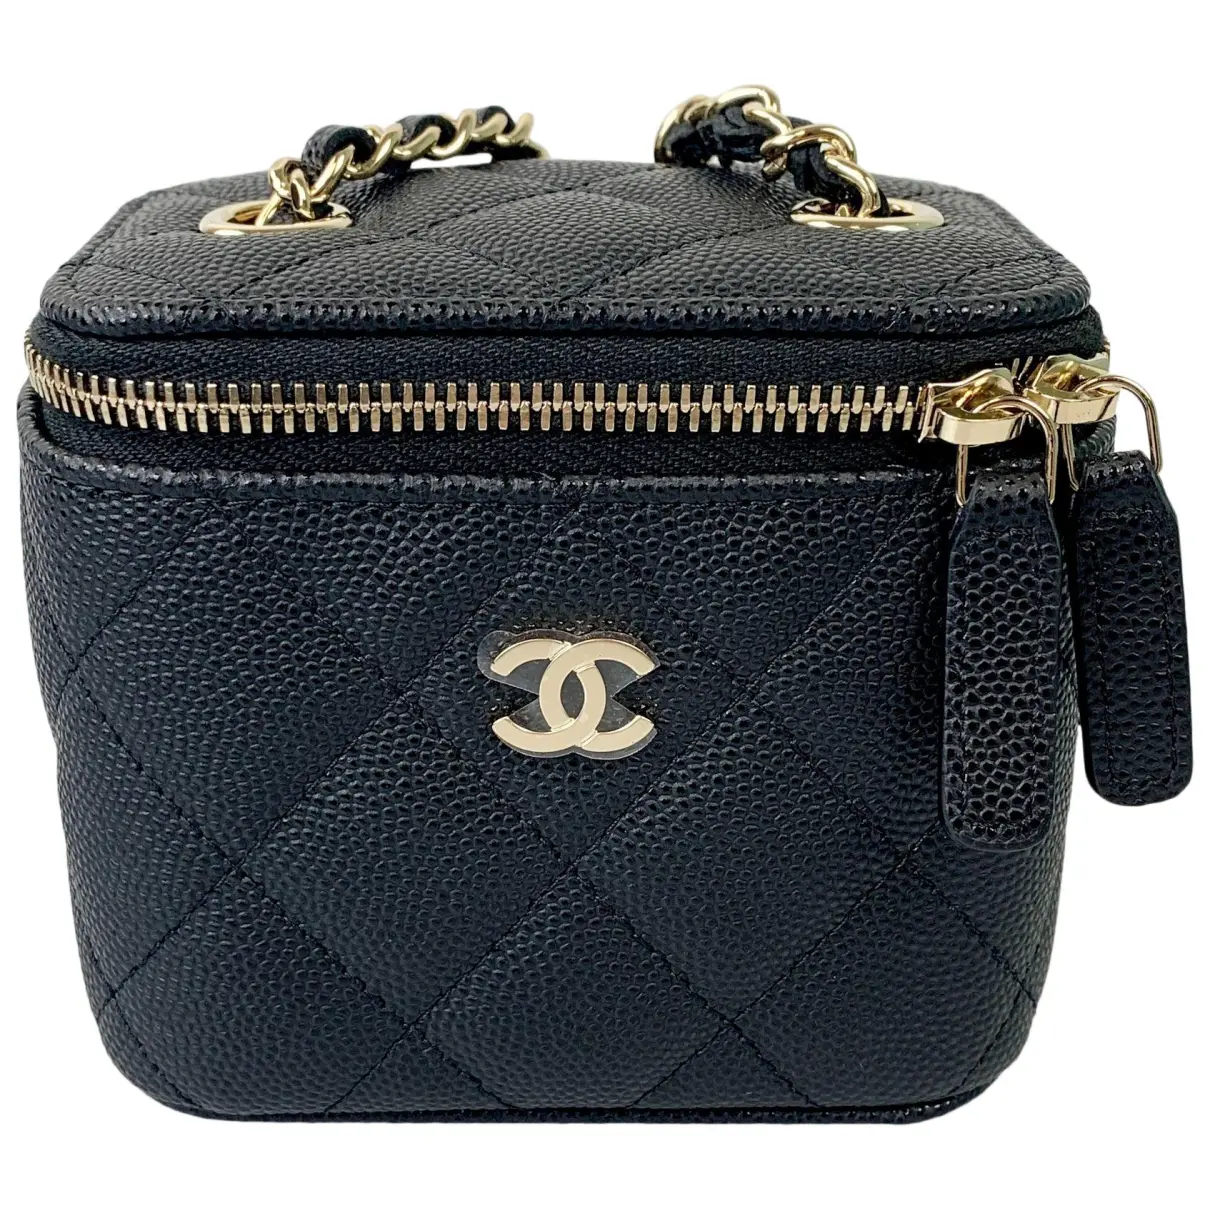 Trendy CC Vanity leather handbag